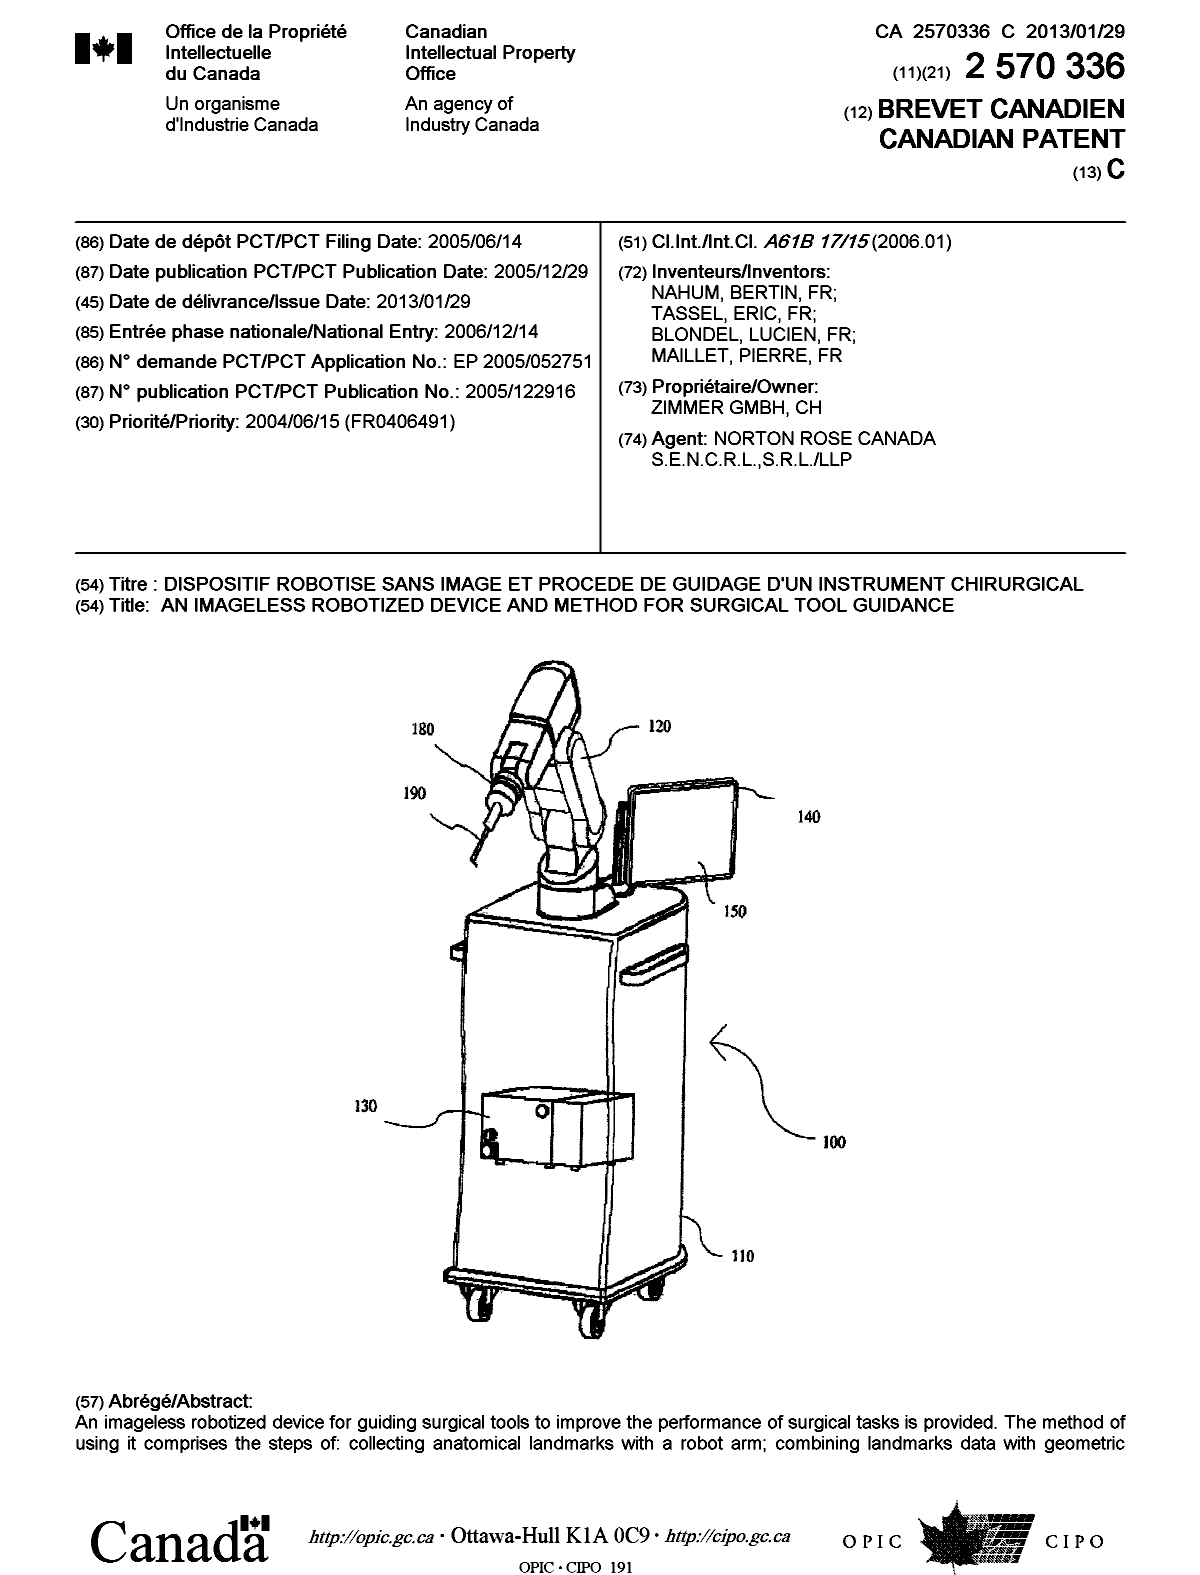 Document de brevet canadien 2570336. Page couverture 20130111. Image 1 de 2